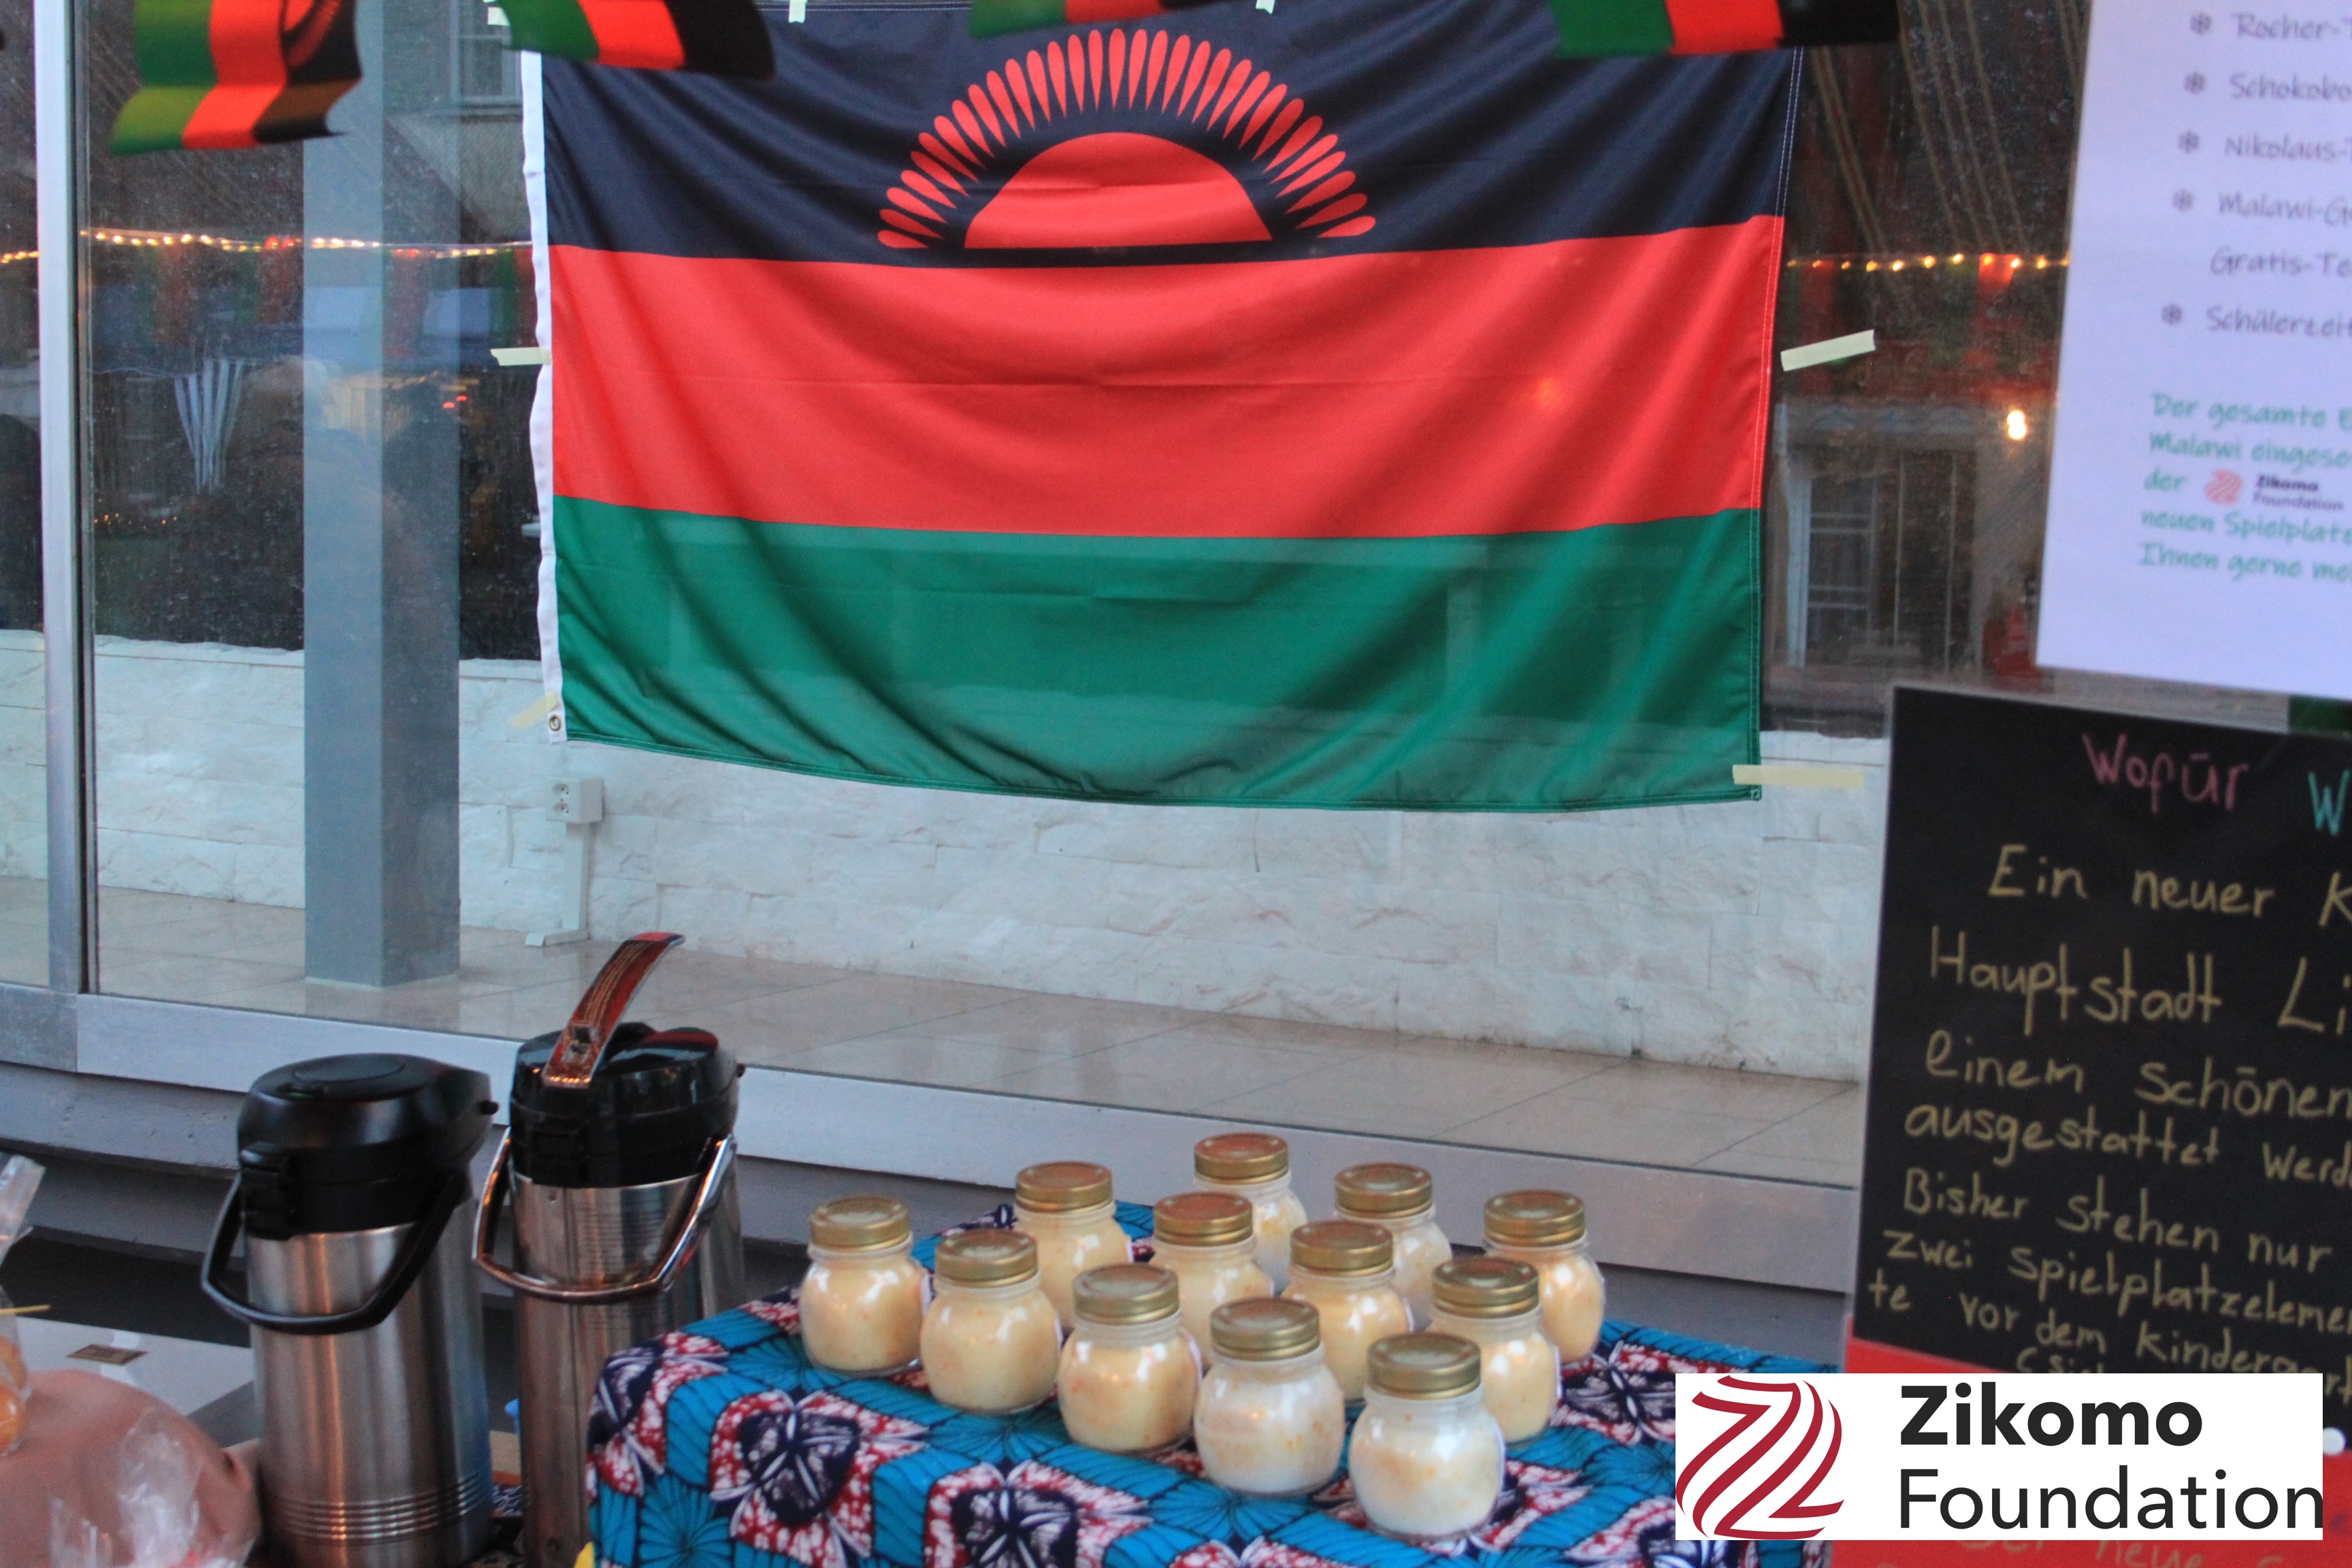 Dekoration an dem Verkaufsstand mti Malawi Fahnen